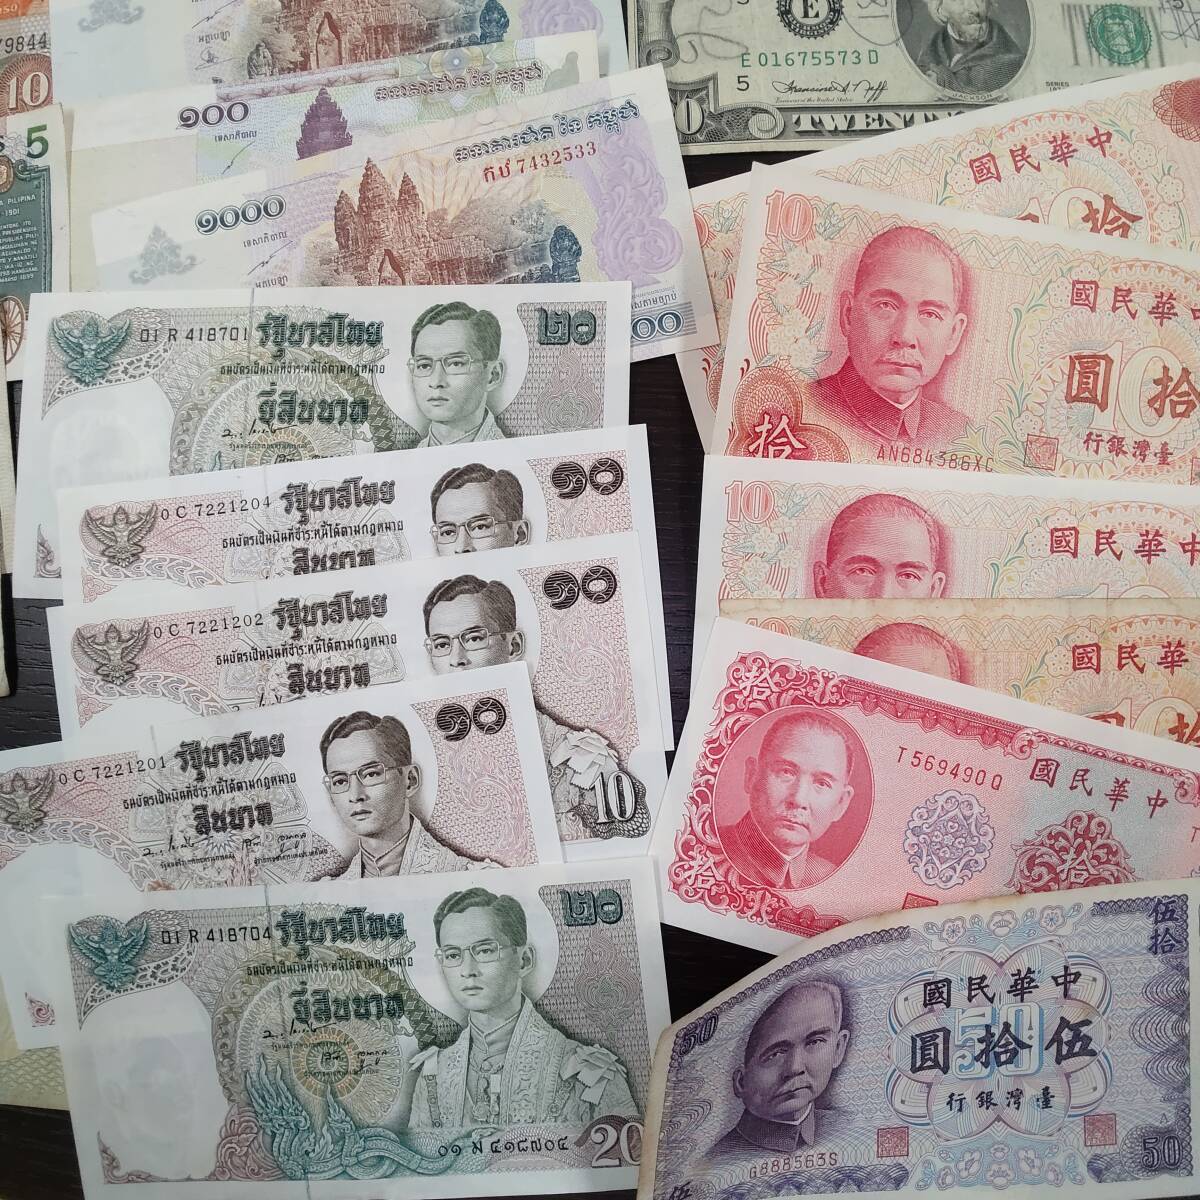 #63 зарубежный зарубежный sen банкноты много суммировать доллар . мир мир. деньги старый банкноты старый банкноты античный коллекция America China и т.п. 